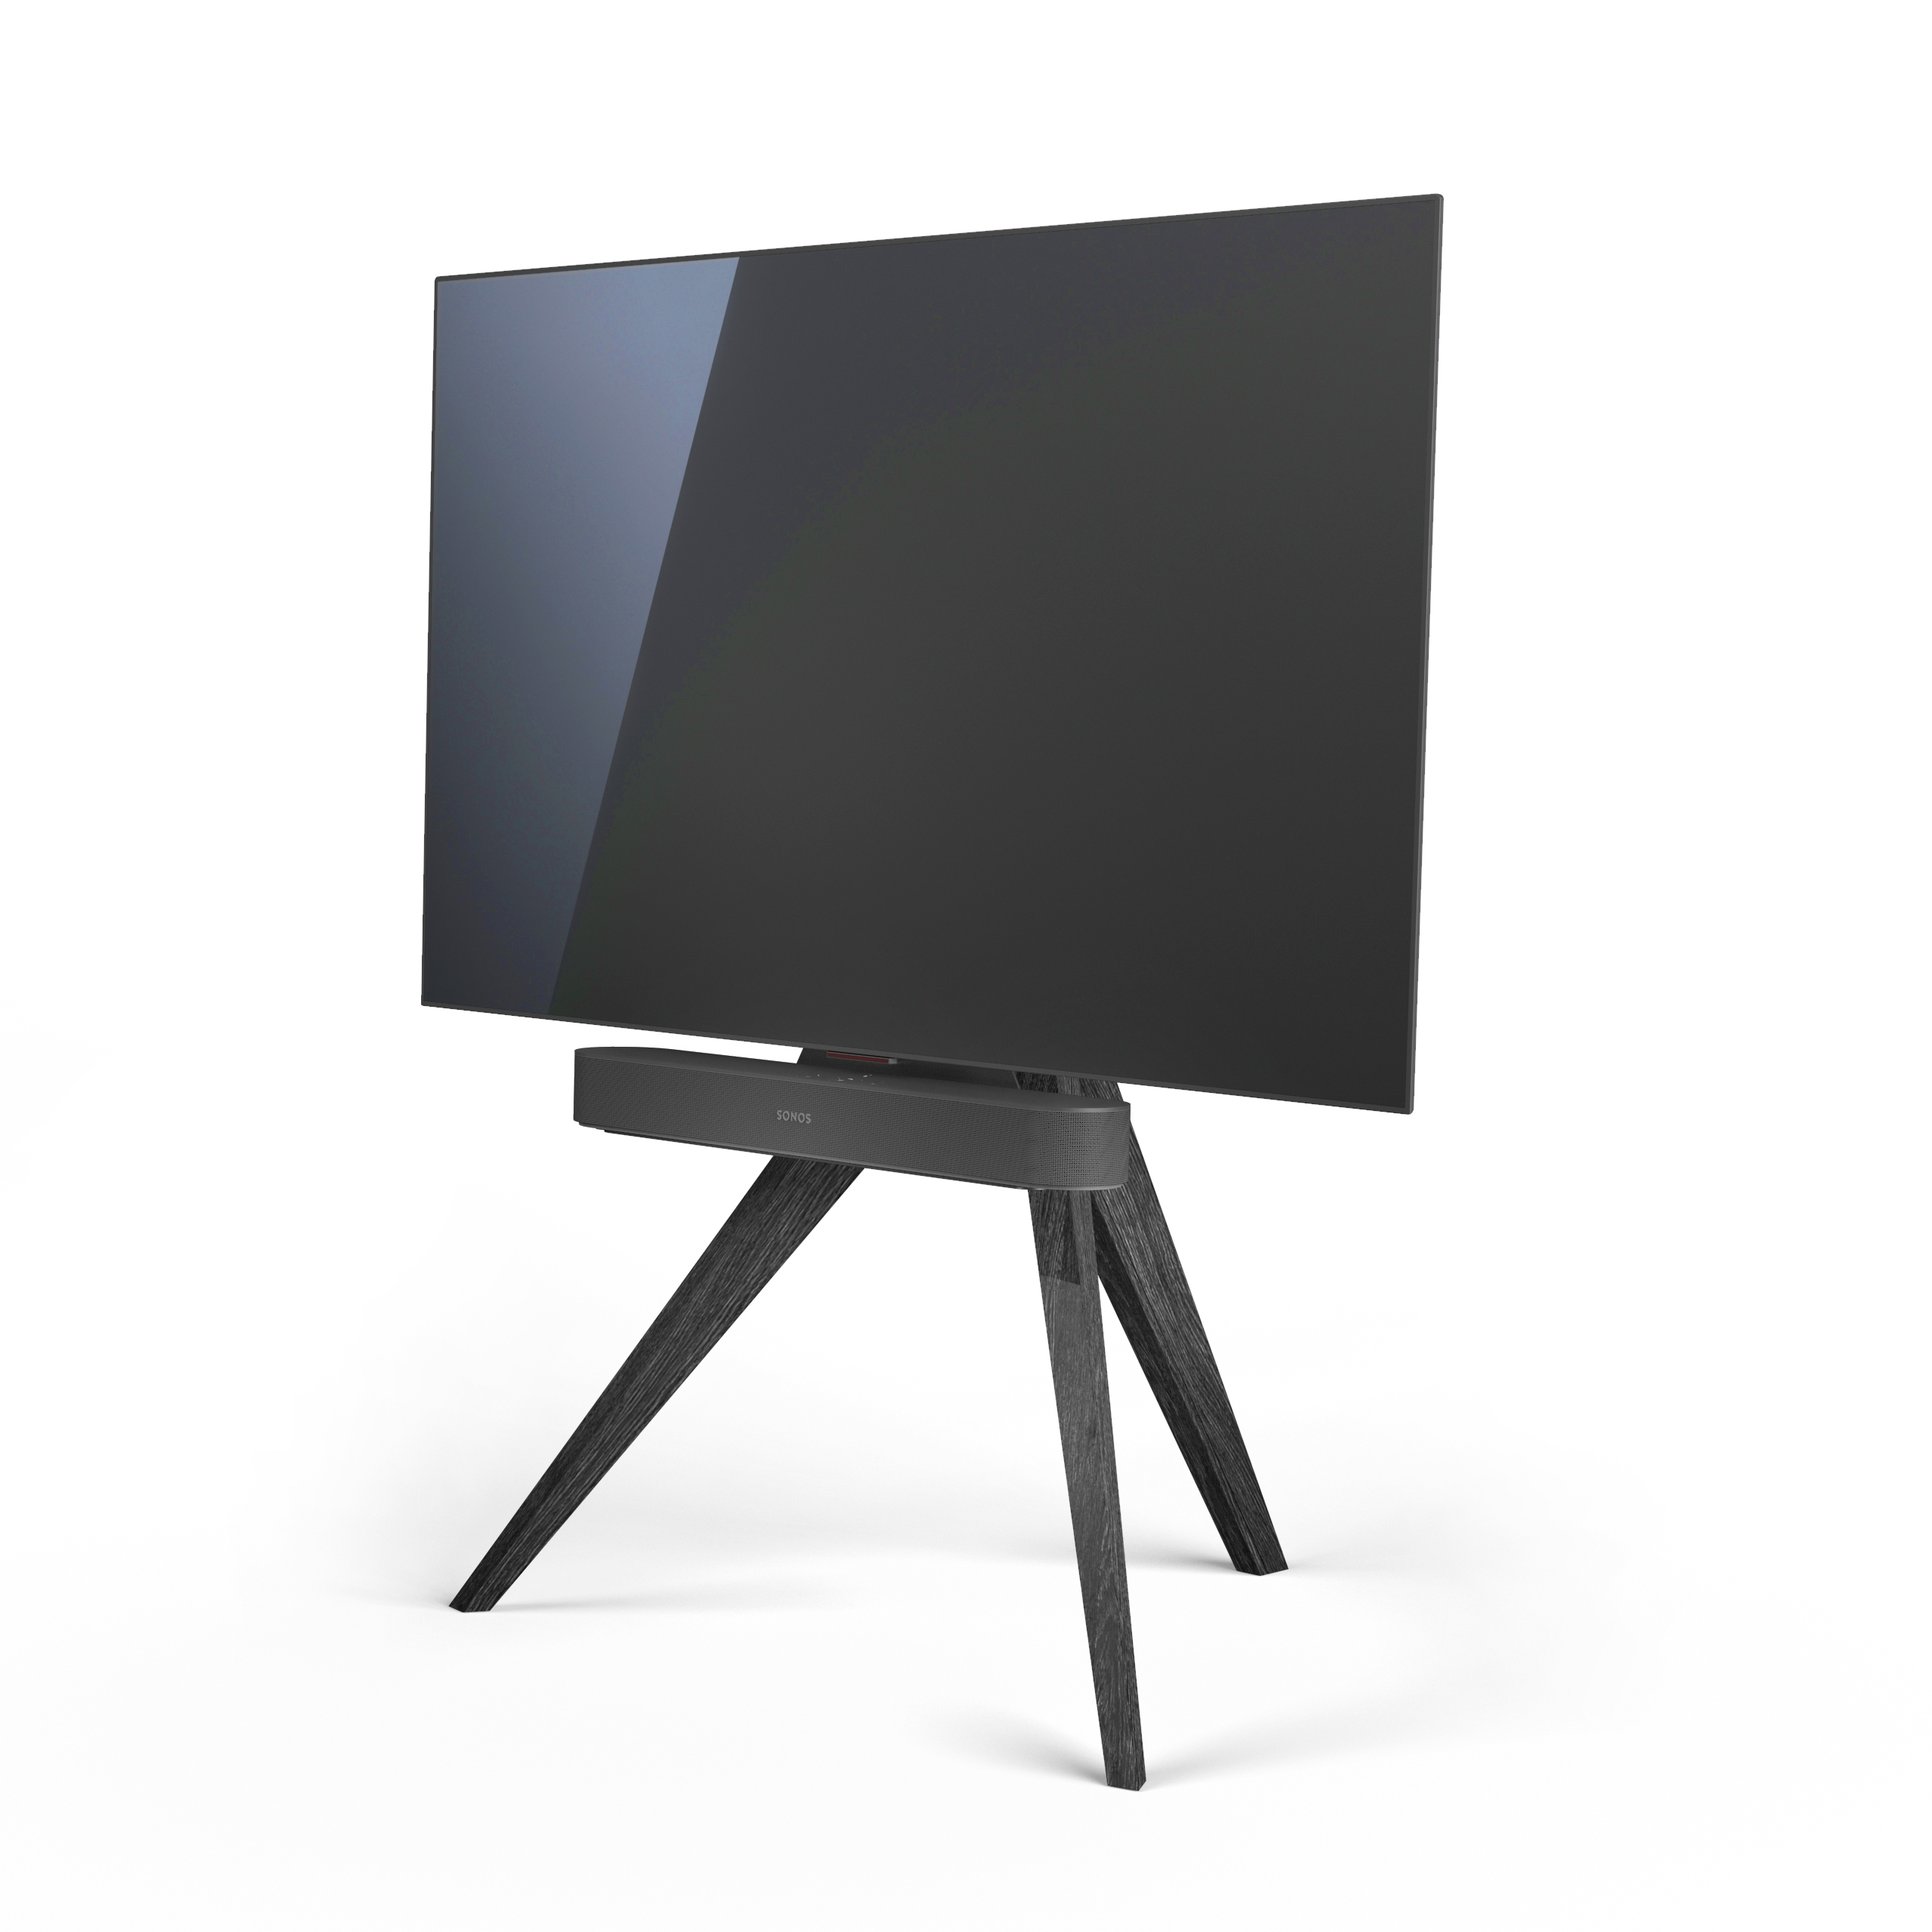 Spectral AX30 | houten tv-standaard | black-oak